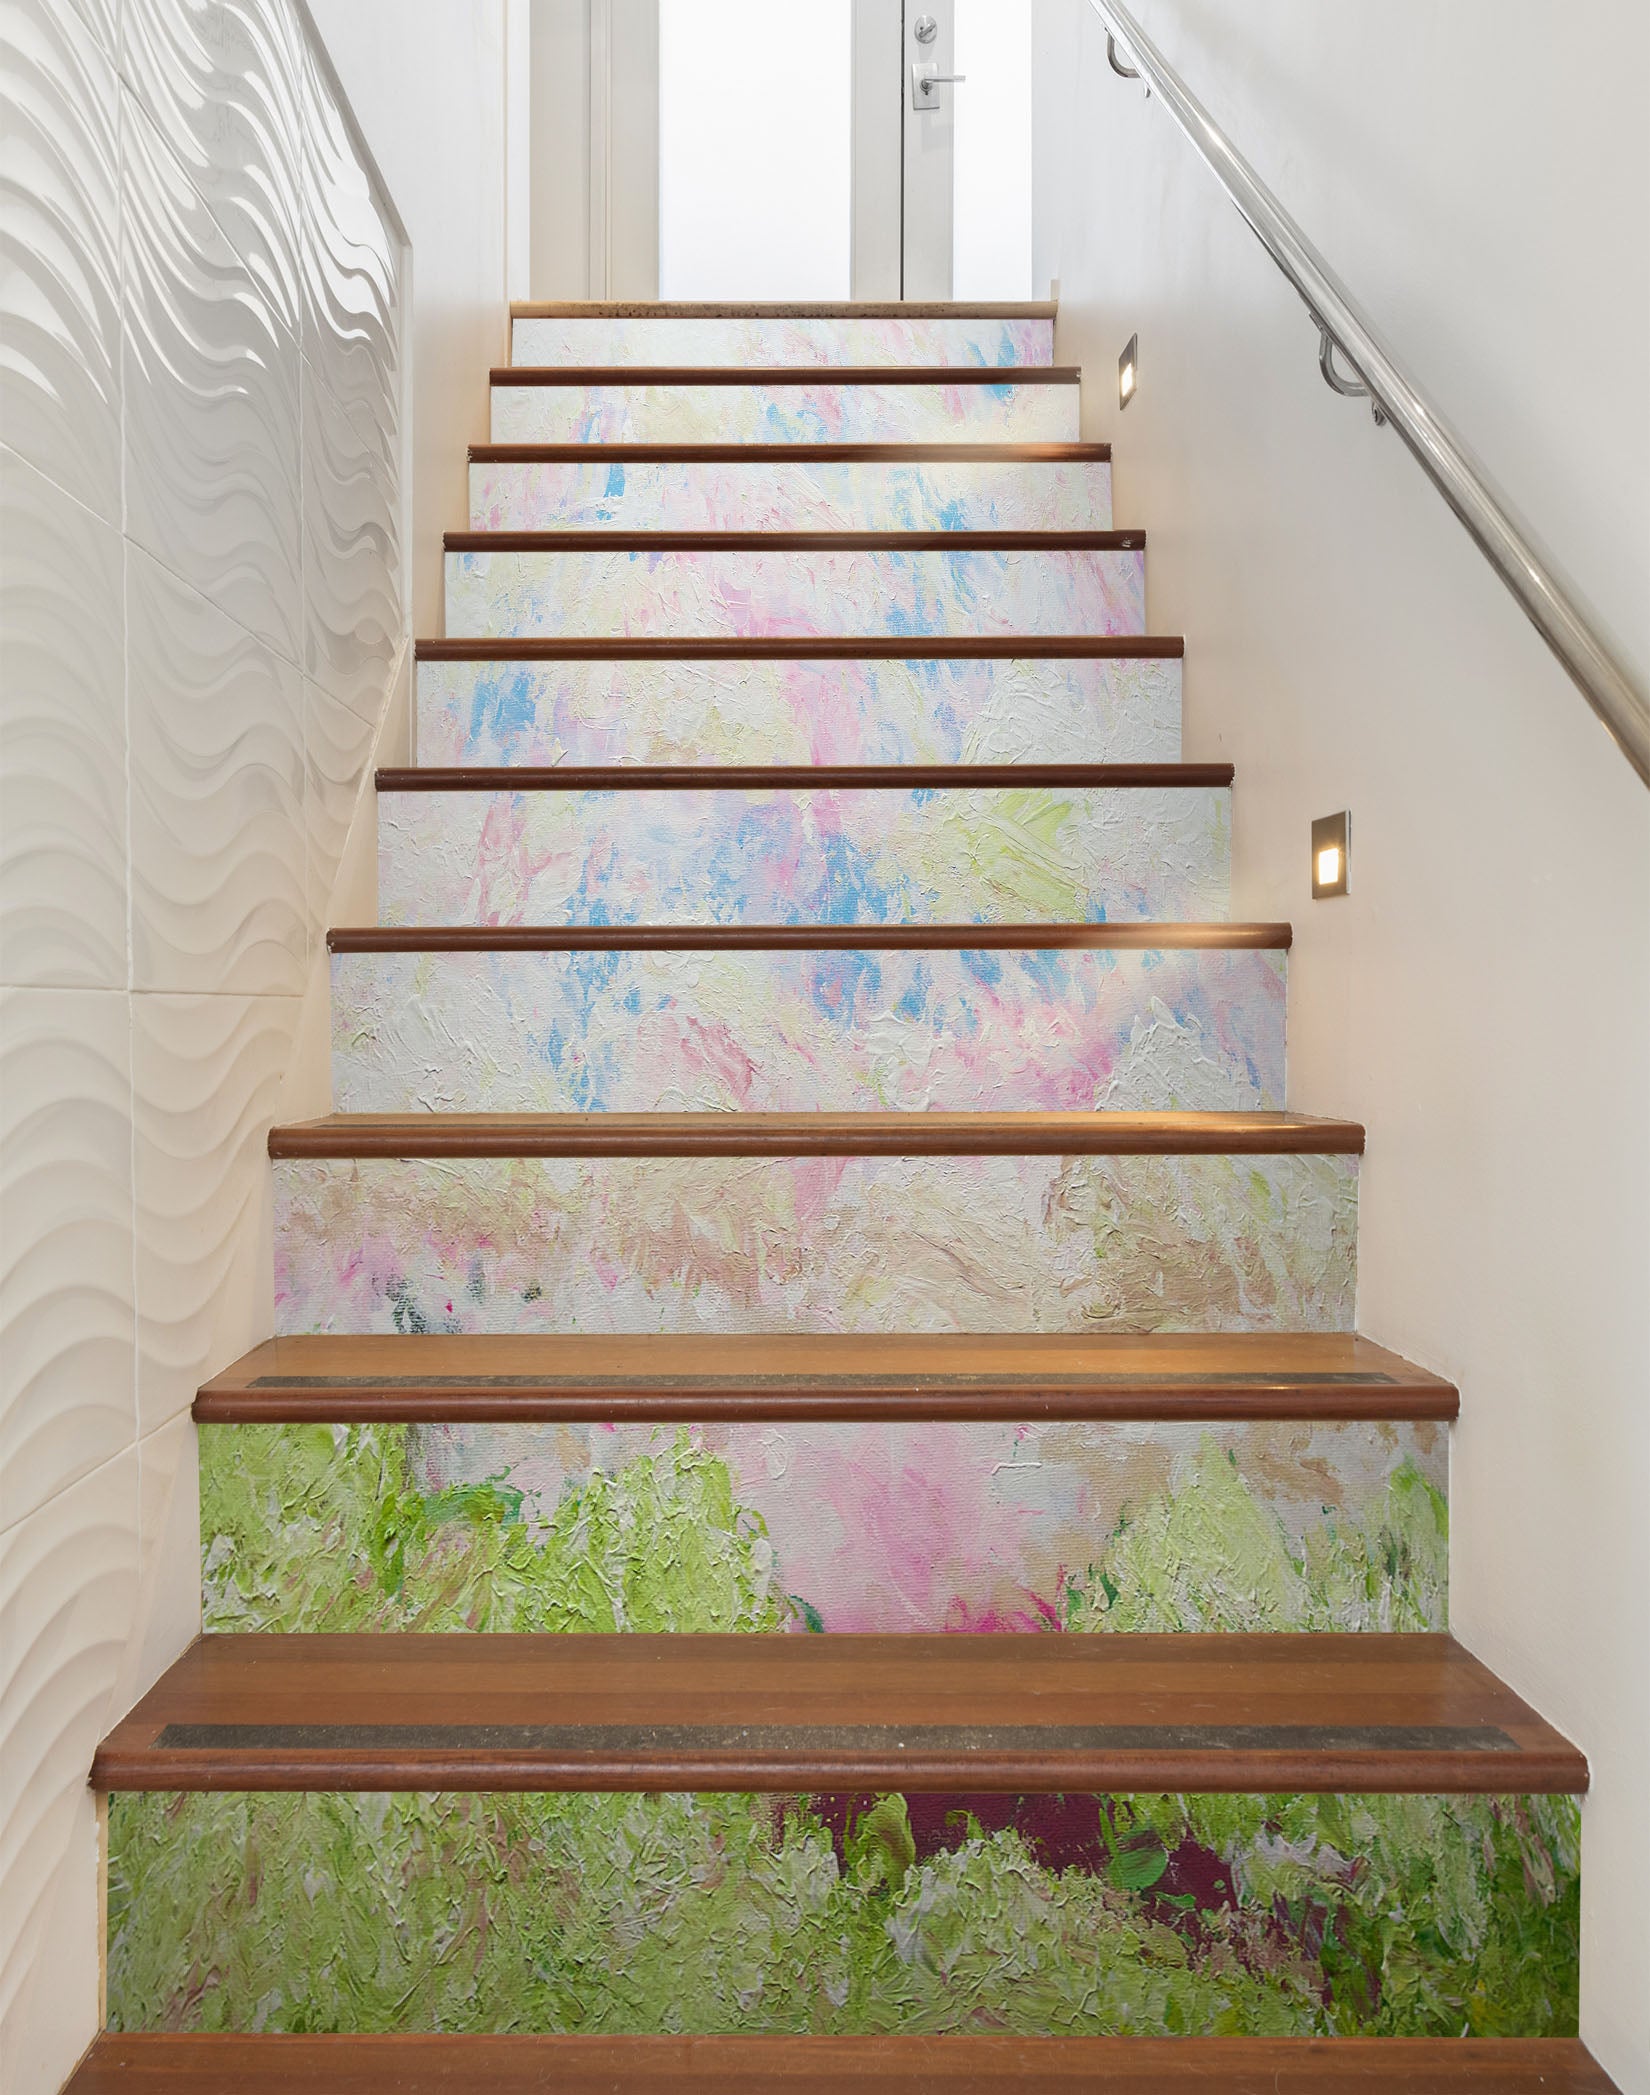 3D Grass Pink Flower Painting 96133 Allan P. Friedlander Stair Risers